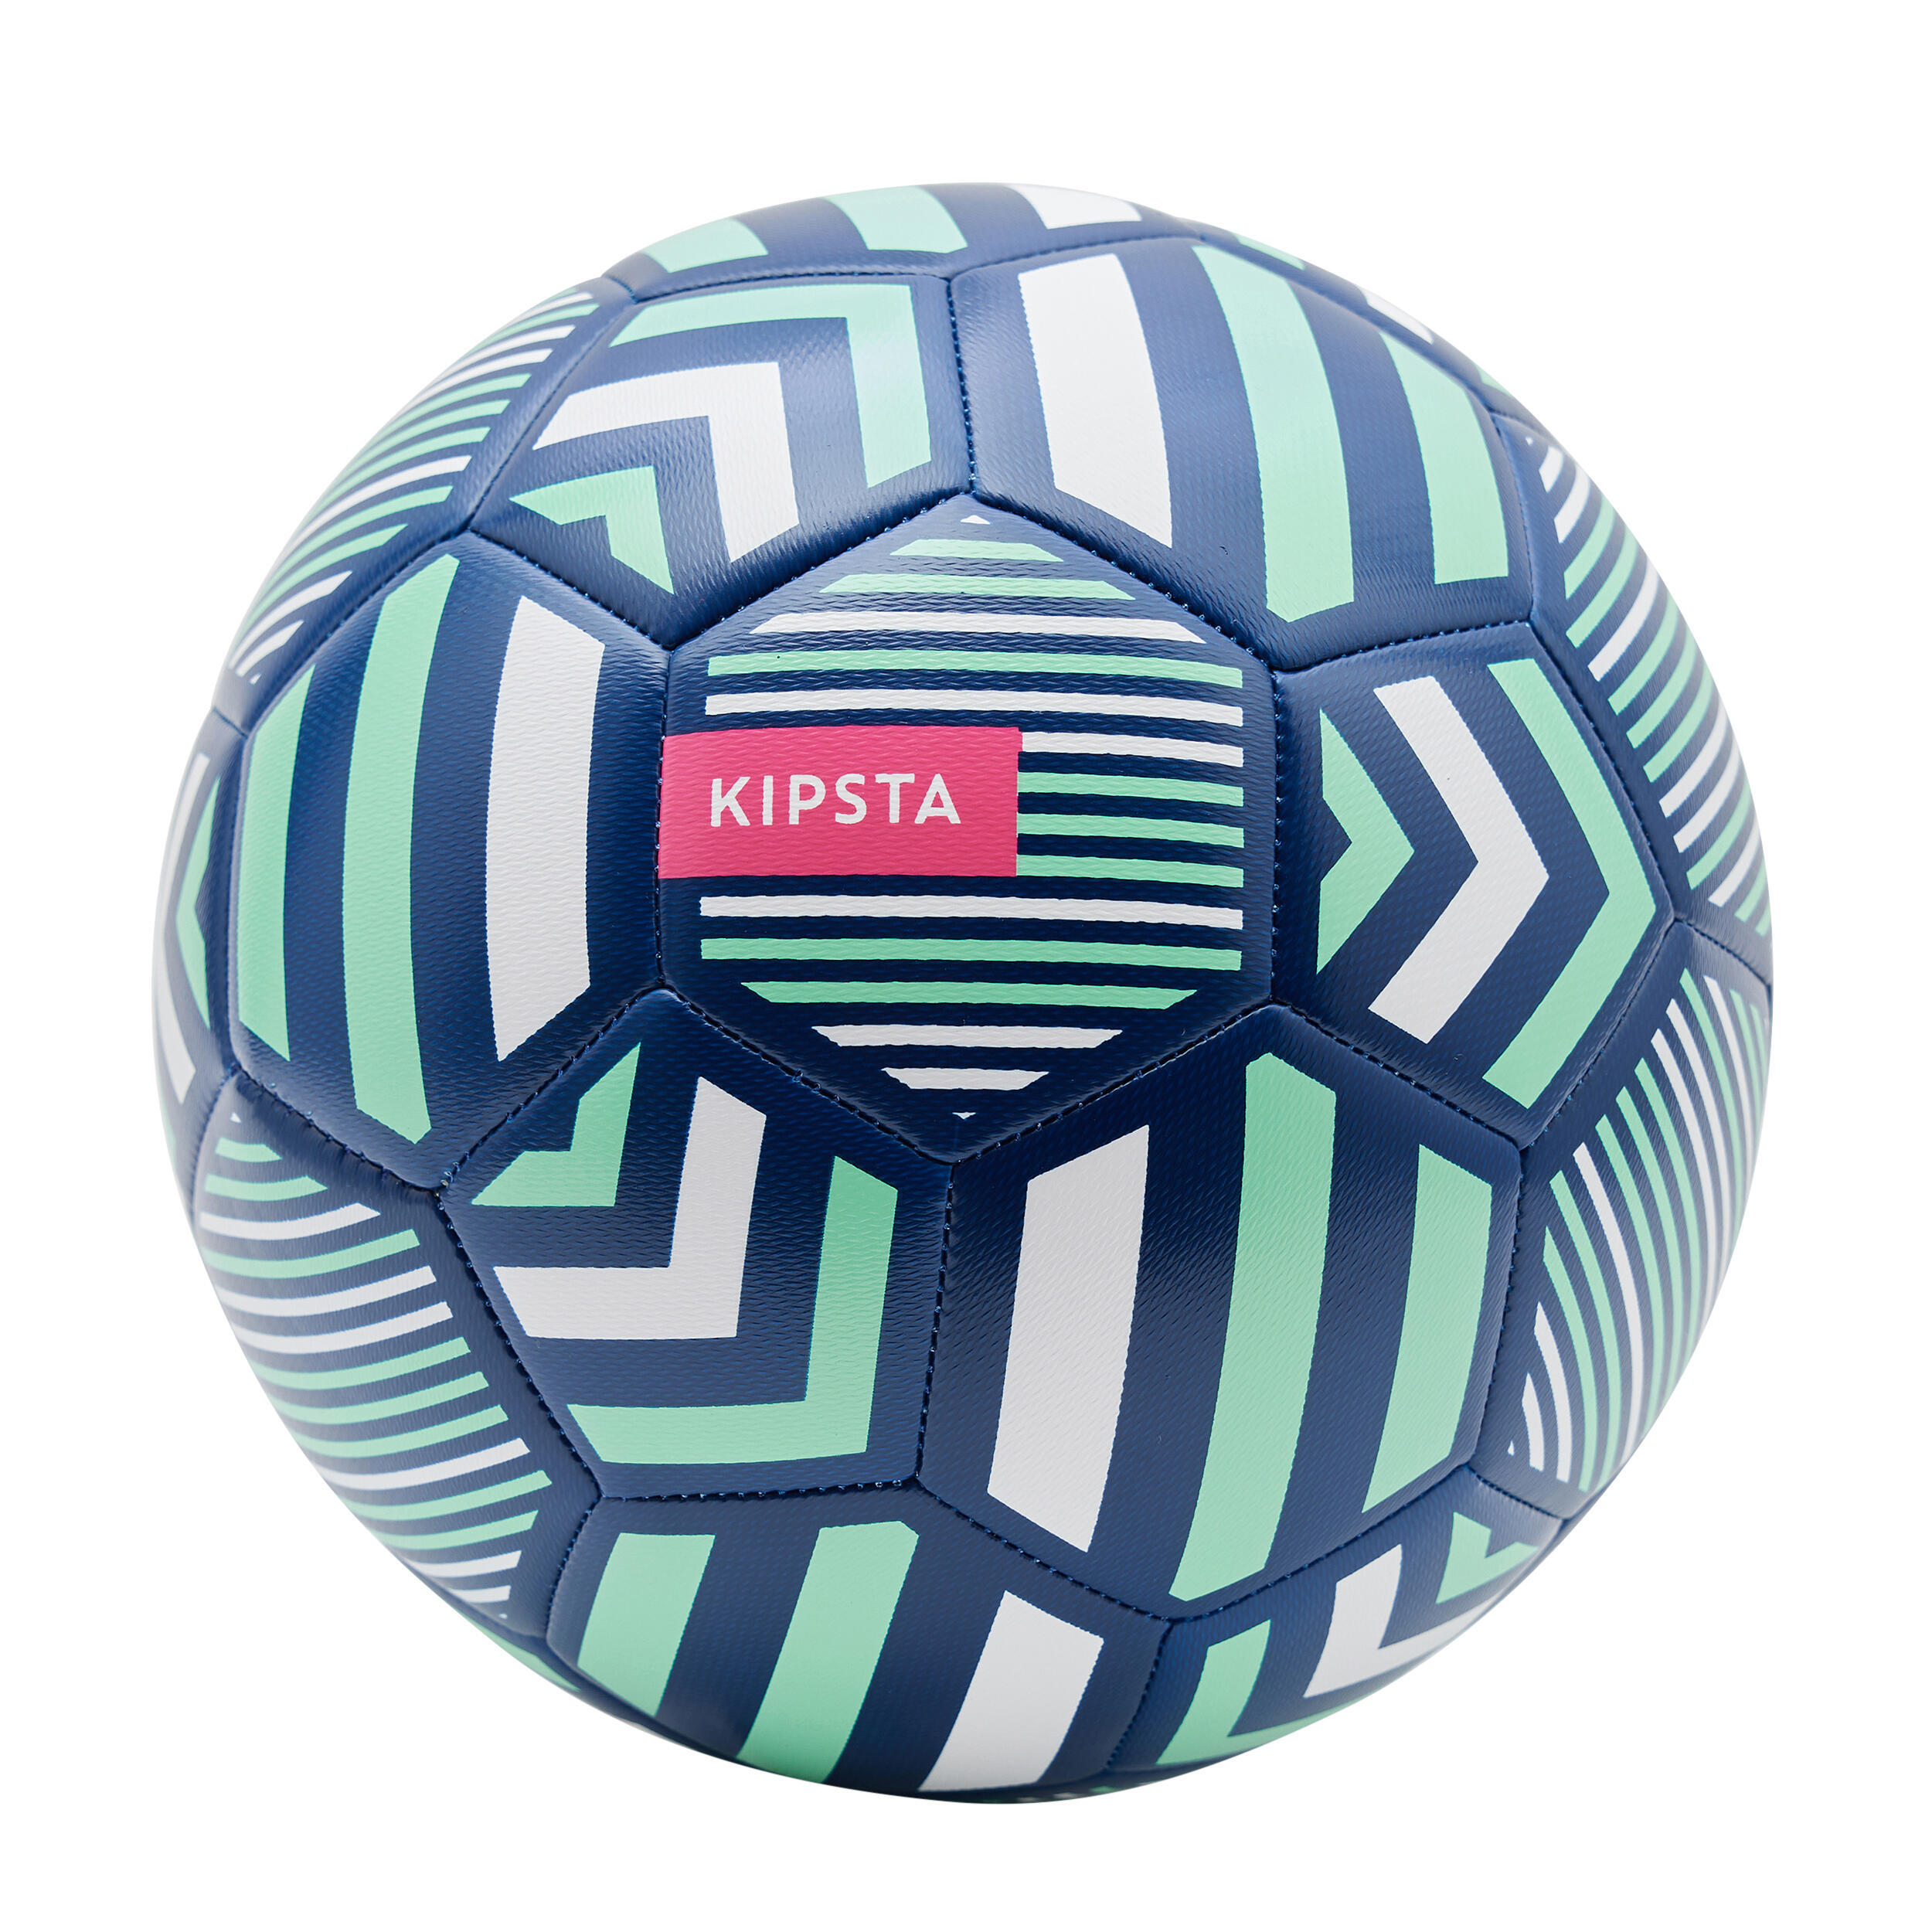 Обучающий футбольный мяч размер 5 - черный/зеленый KIPSTA футбольный мяч 5 с символикой фк ливерпуль fс liverpool зелено красный китай 5 красный зеленый мяч спортивный 5